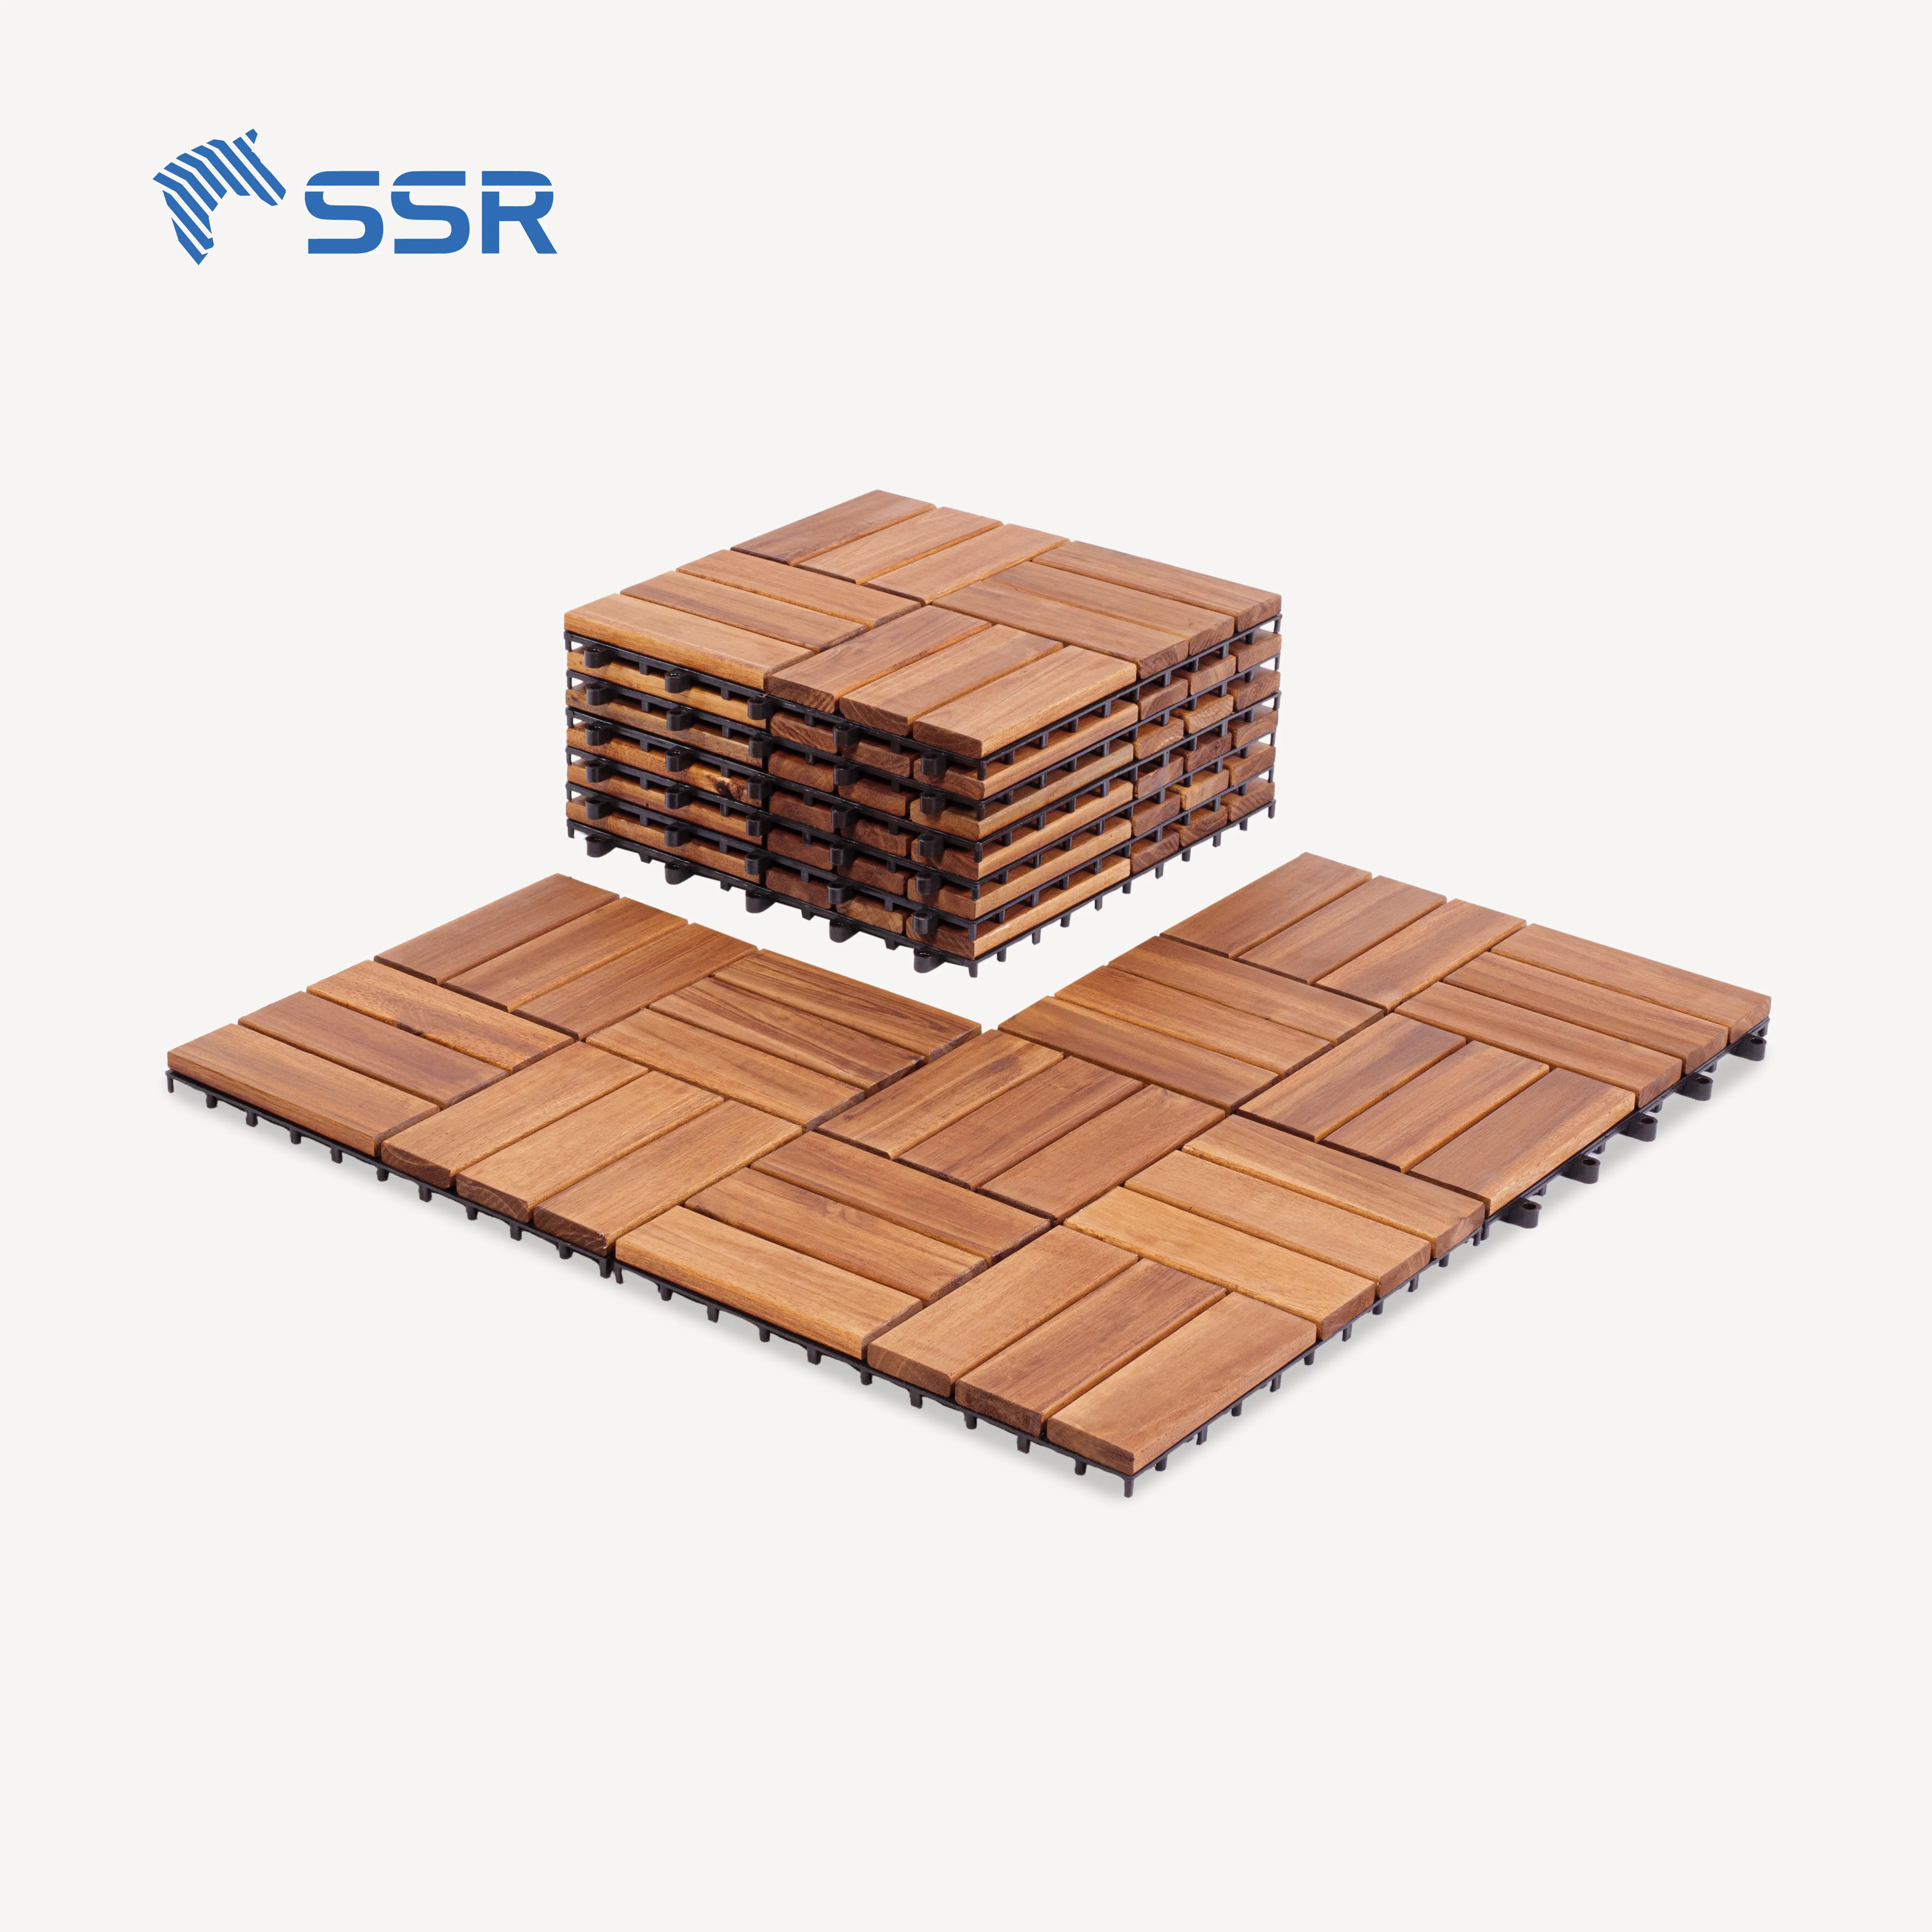 SSR VINA-carreaux de terrasse en bois d'acacia-produit de bricolage carreaux de sol carreaux de pont extérieur fabriqué au Vietnam